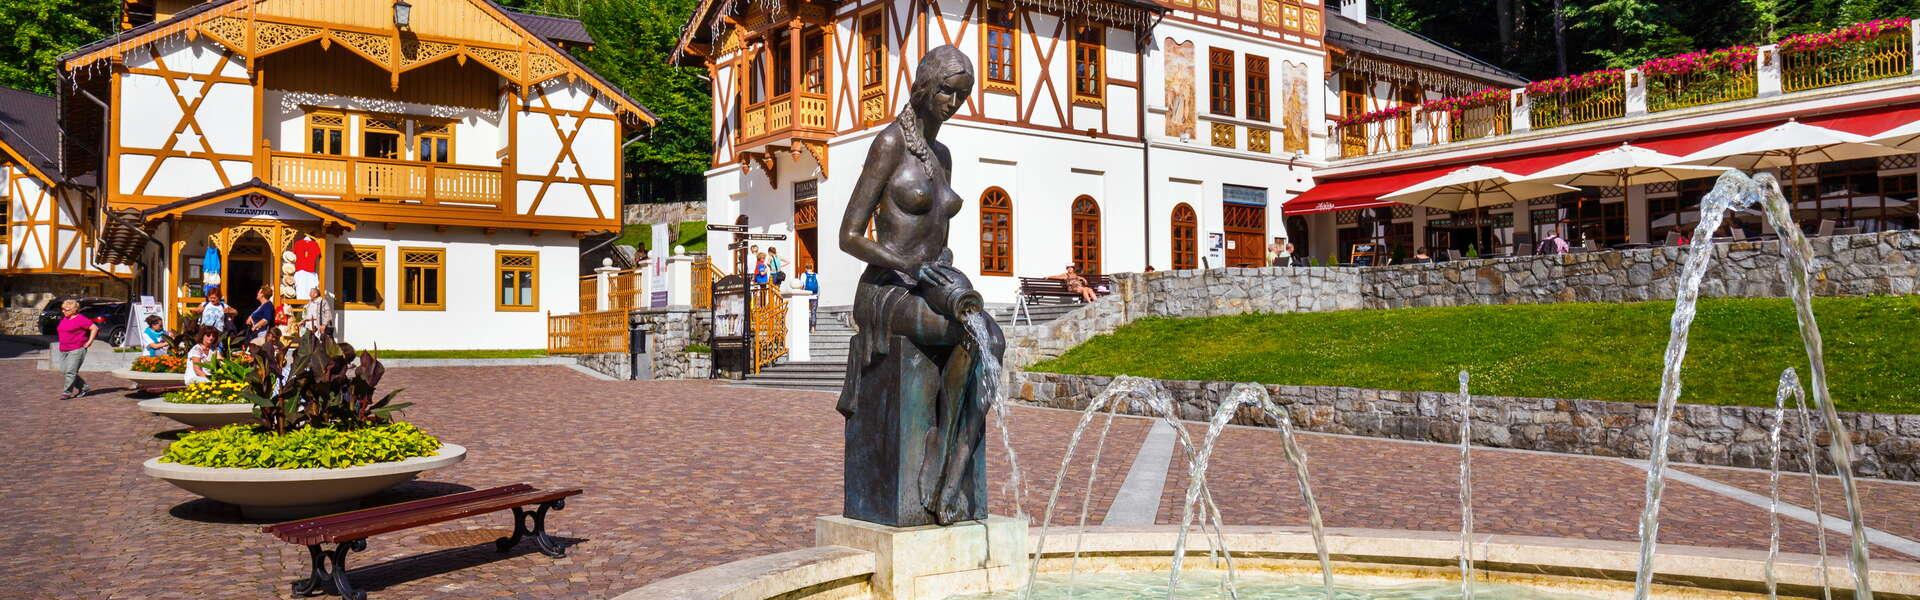 Blick auf einen Brunnen mit einer Frauenfigur. Im Hintergrund historische Häuser aus Holz.